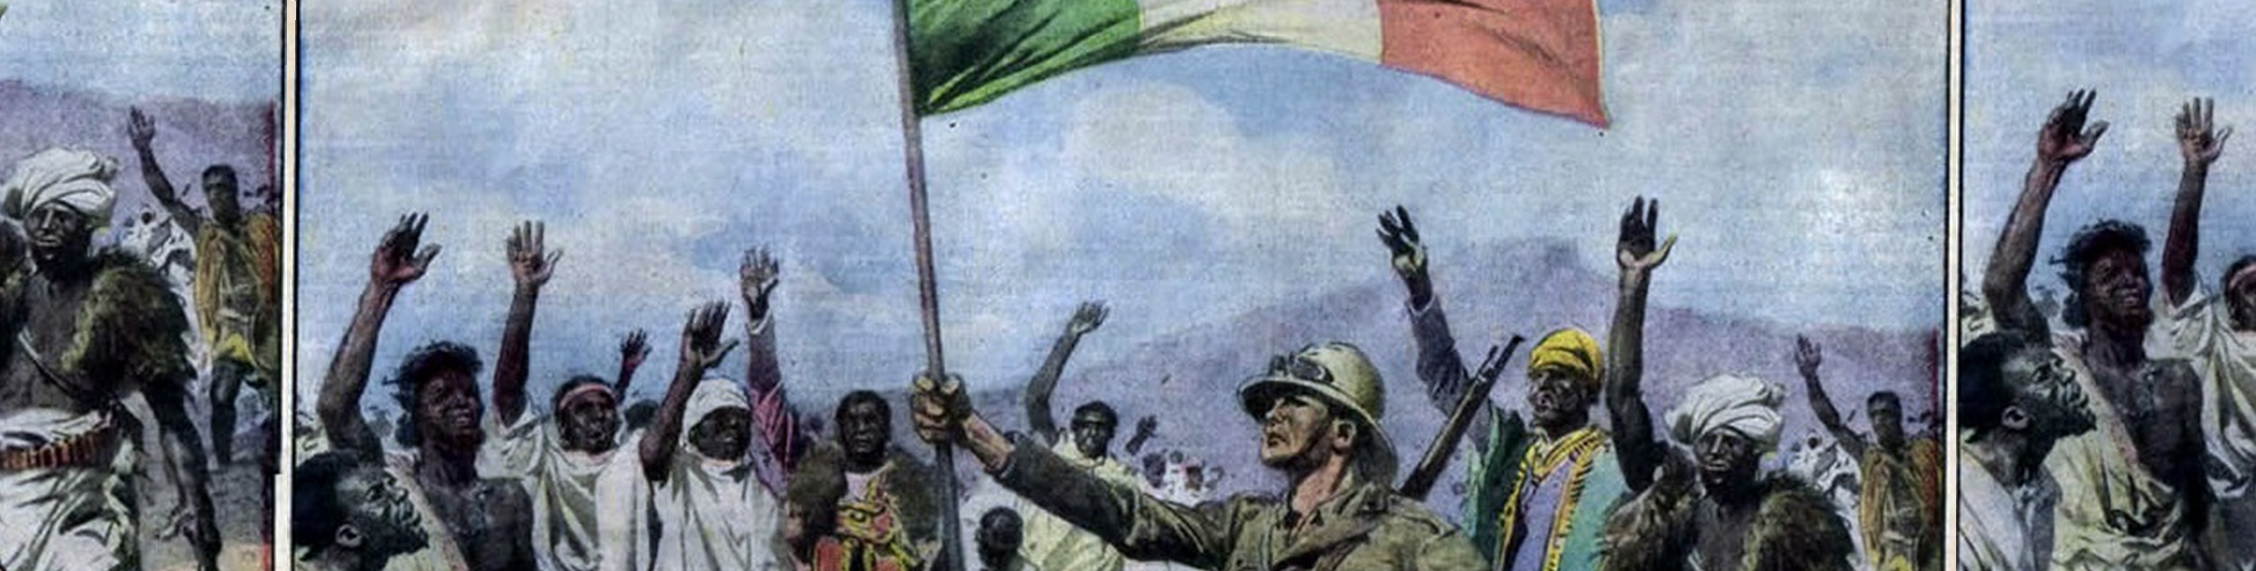 Educare all’Impero. Apprendimento coloniale nell’Italia fascista